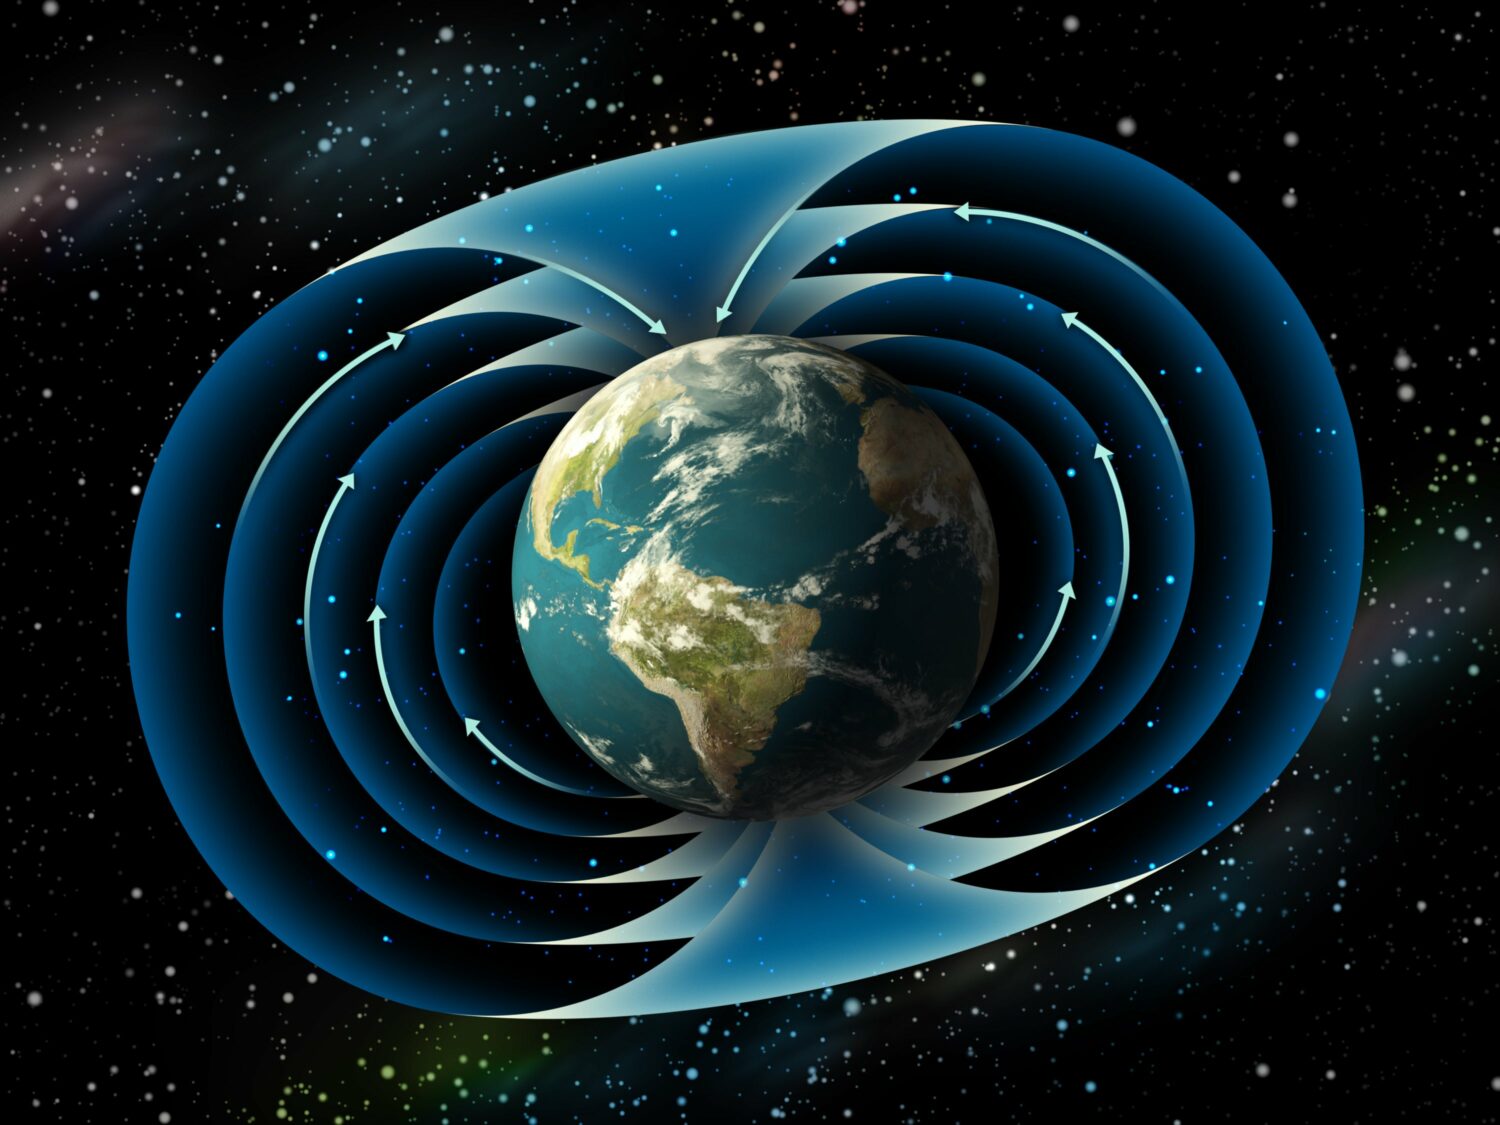 Το μαγνητικό πεδίο της Γης εξασθενεί και οι επιστήμονες δεν ξέρουν γιατί